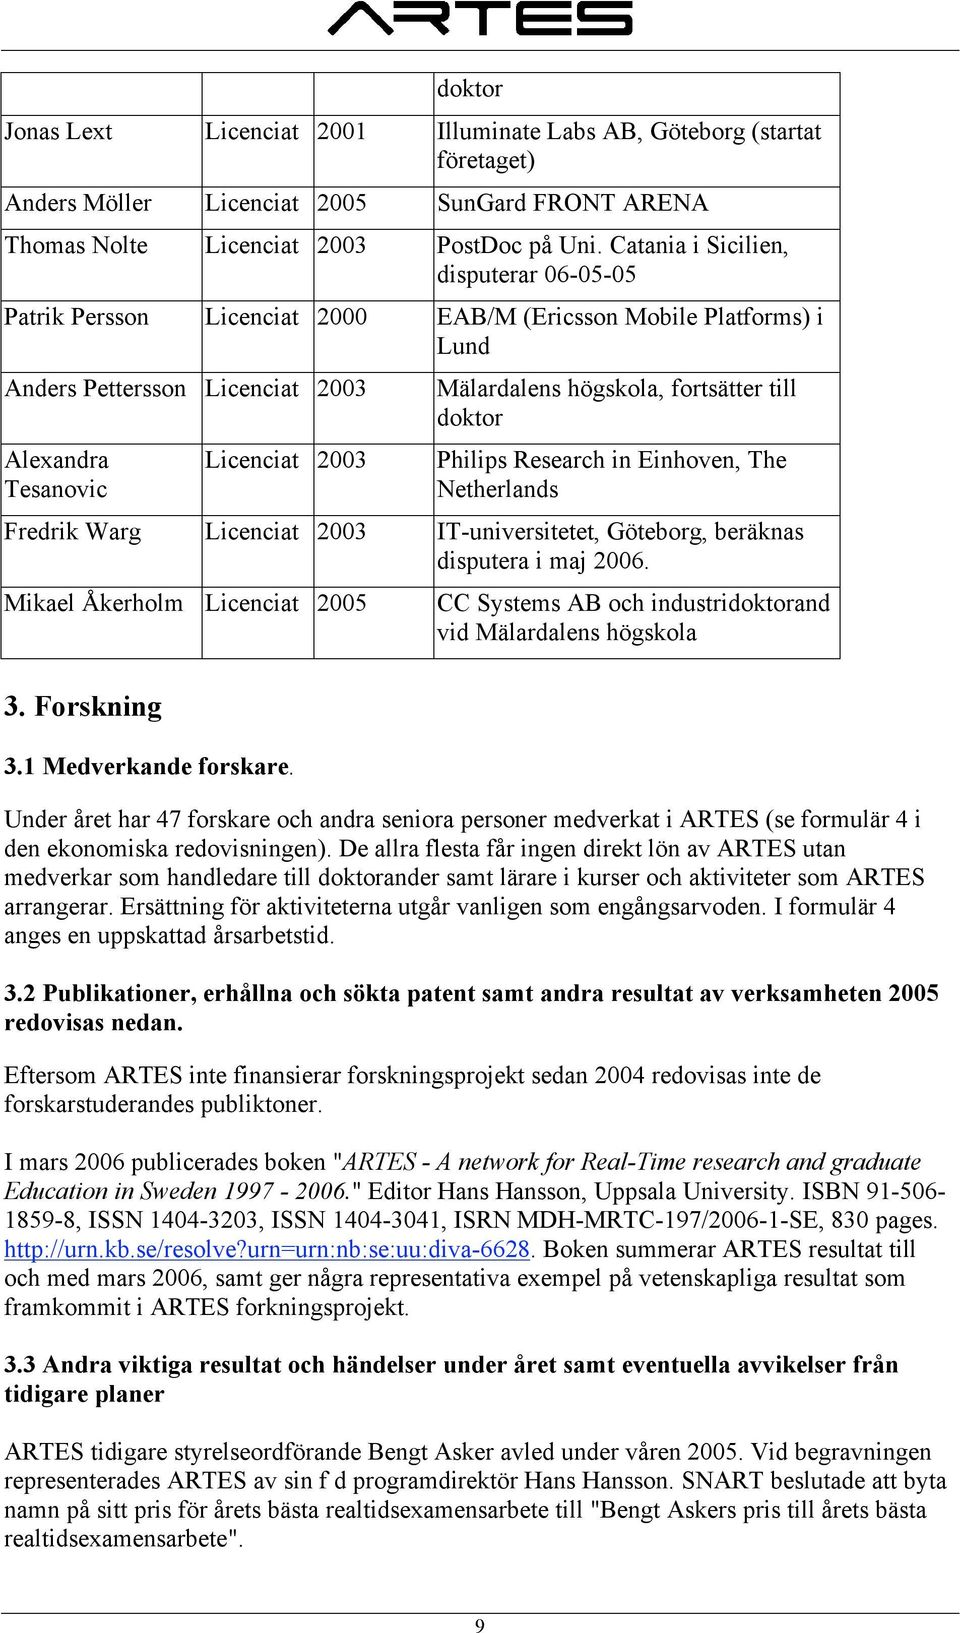 högskola, fortsätter till doktor Philips Research in Einhoven, The Netherlands Fredrik Warg Licenciat 2003 IT-universitetet, Göteborg, beräknas disputera i maj 2006. Mikael Åkerholm Licenciat 2005 3.